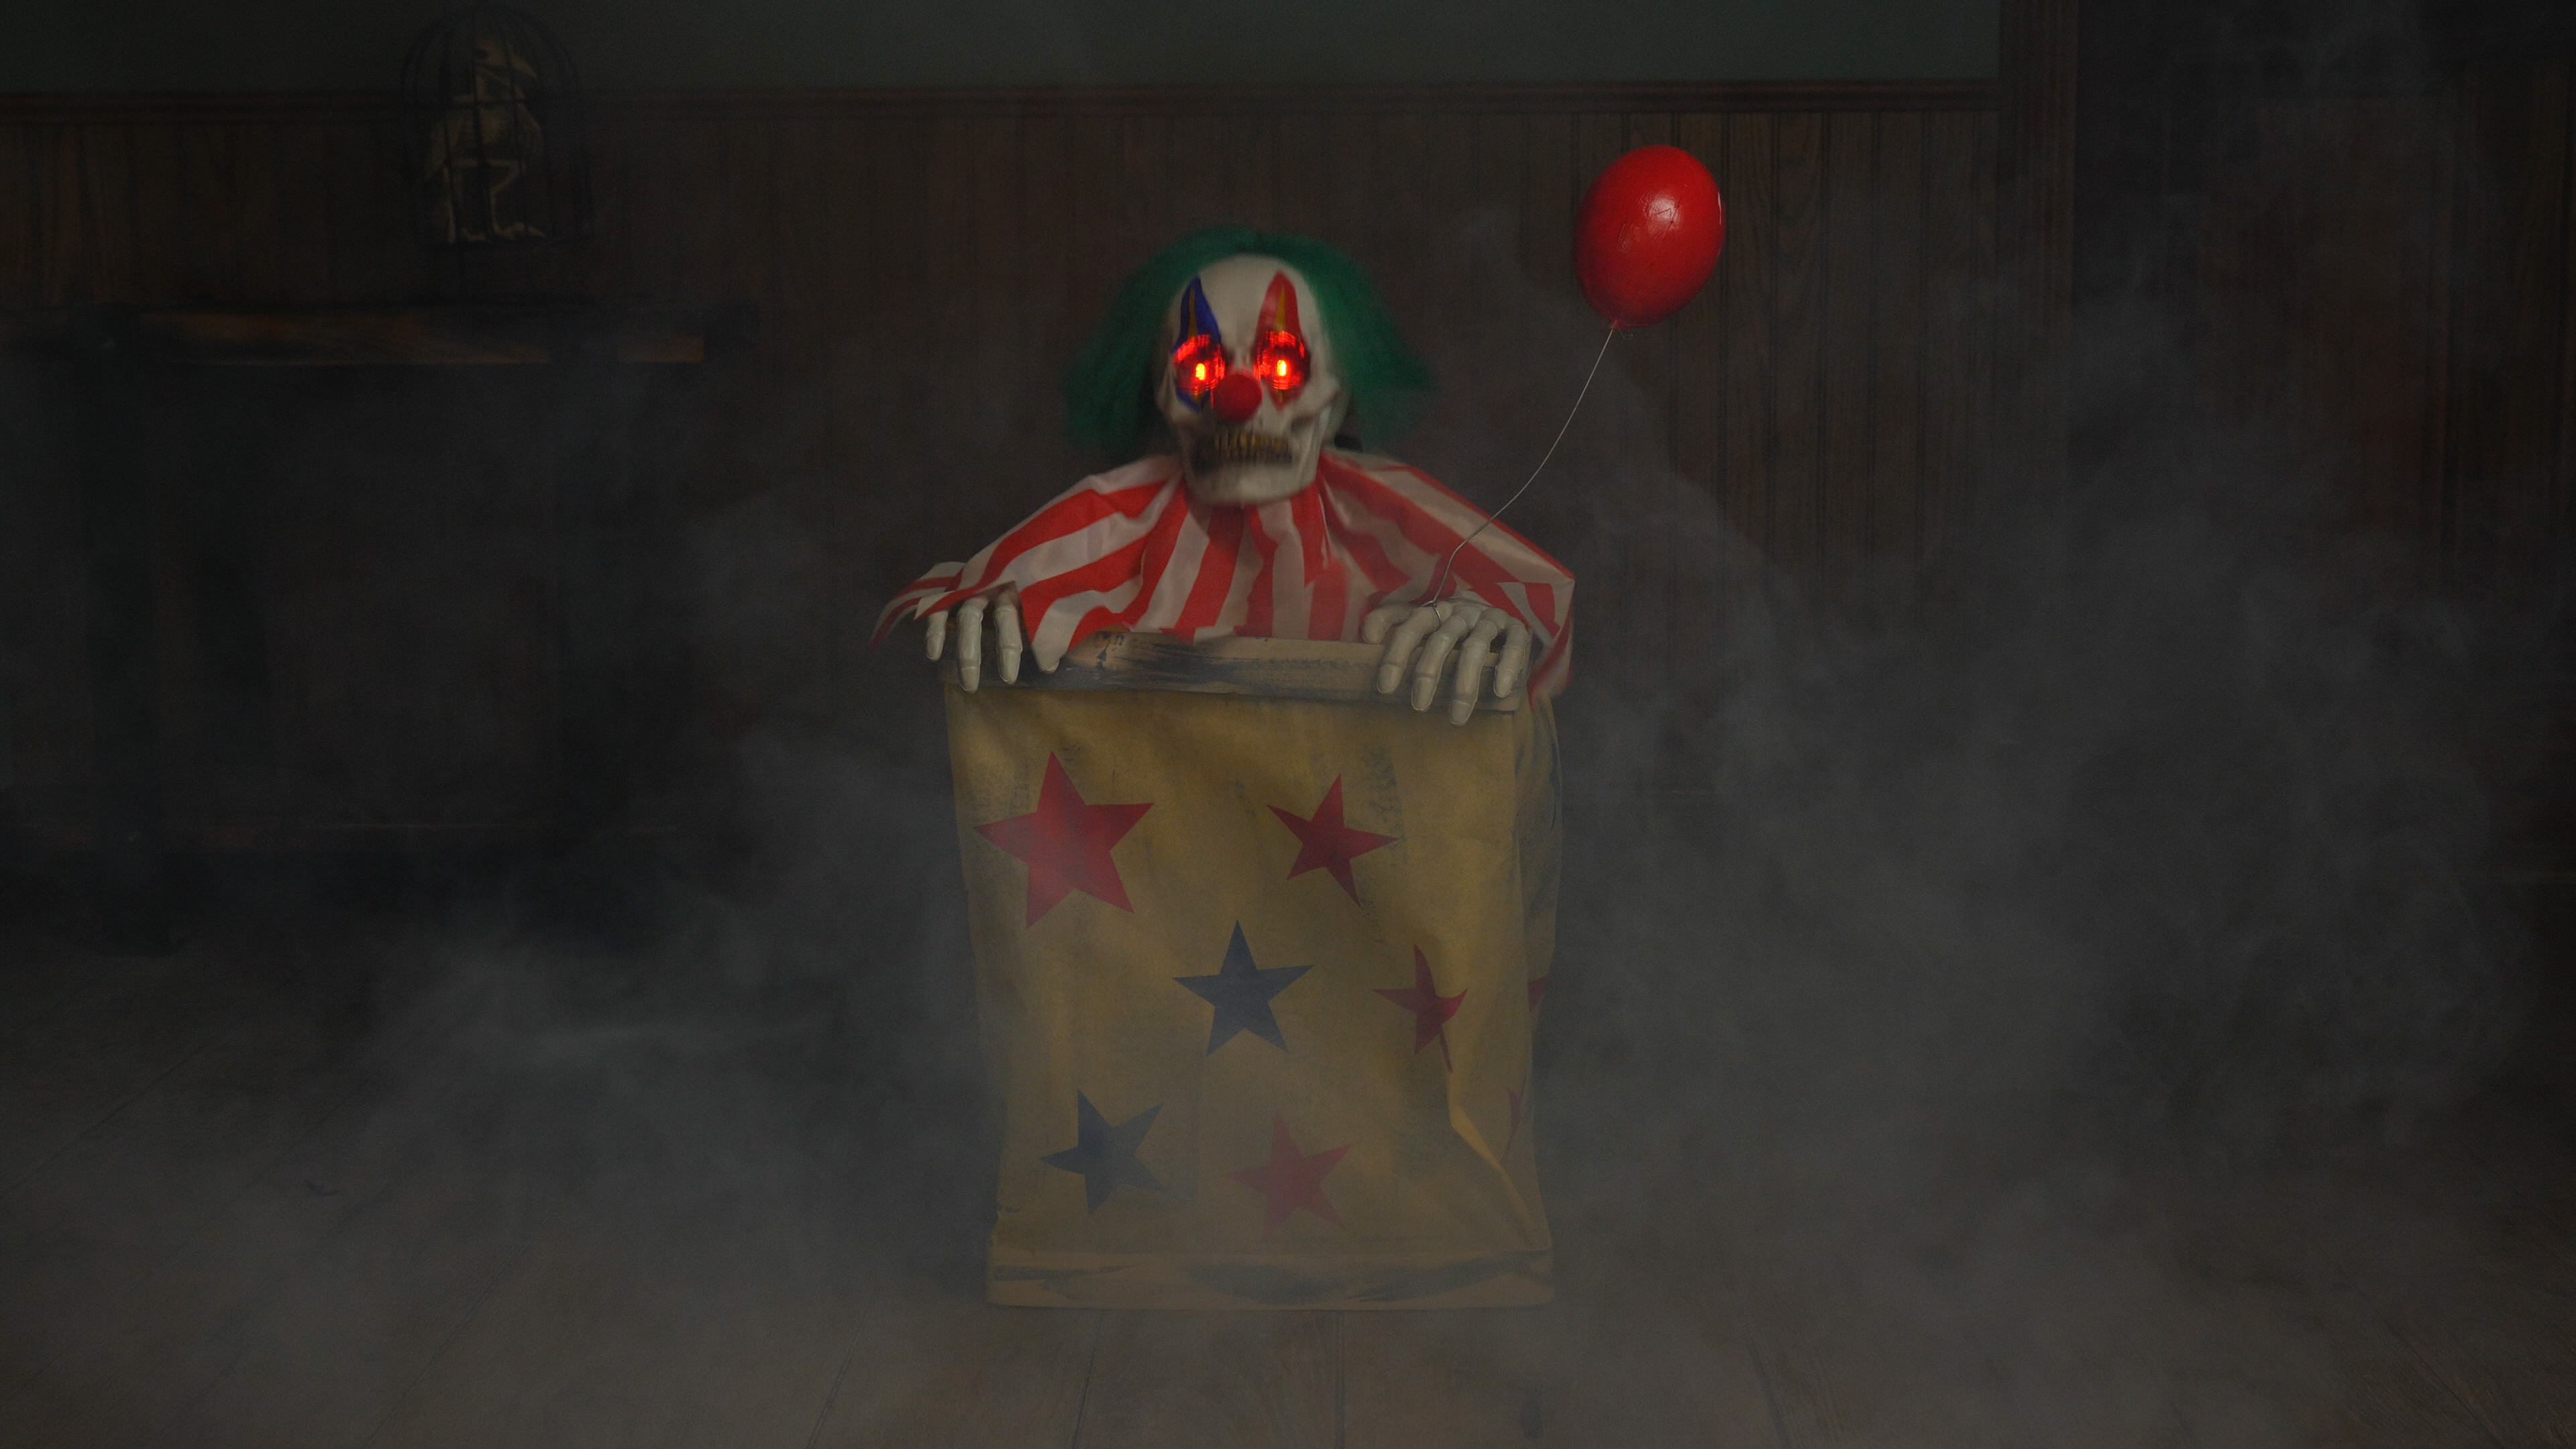 FUN3287 Animated Evil Clown in Box Halloween Prop